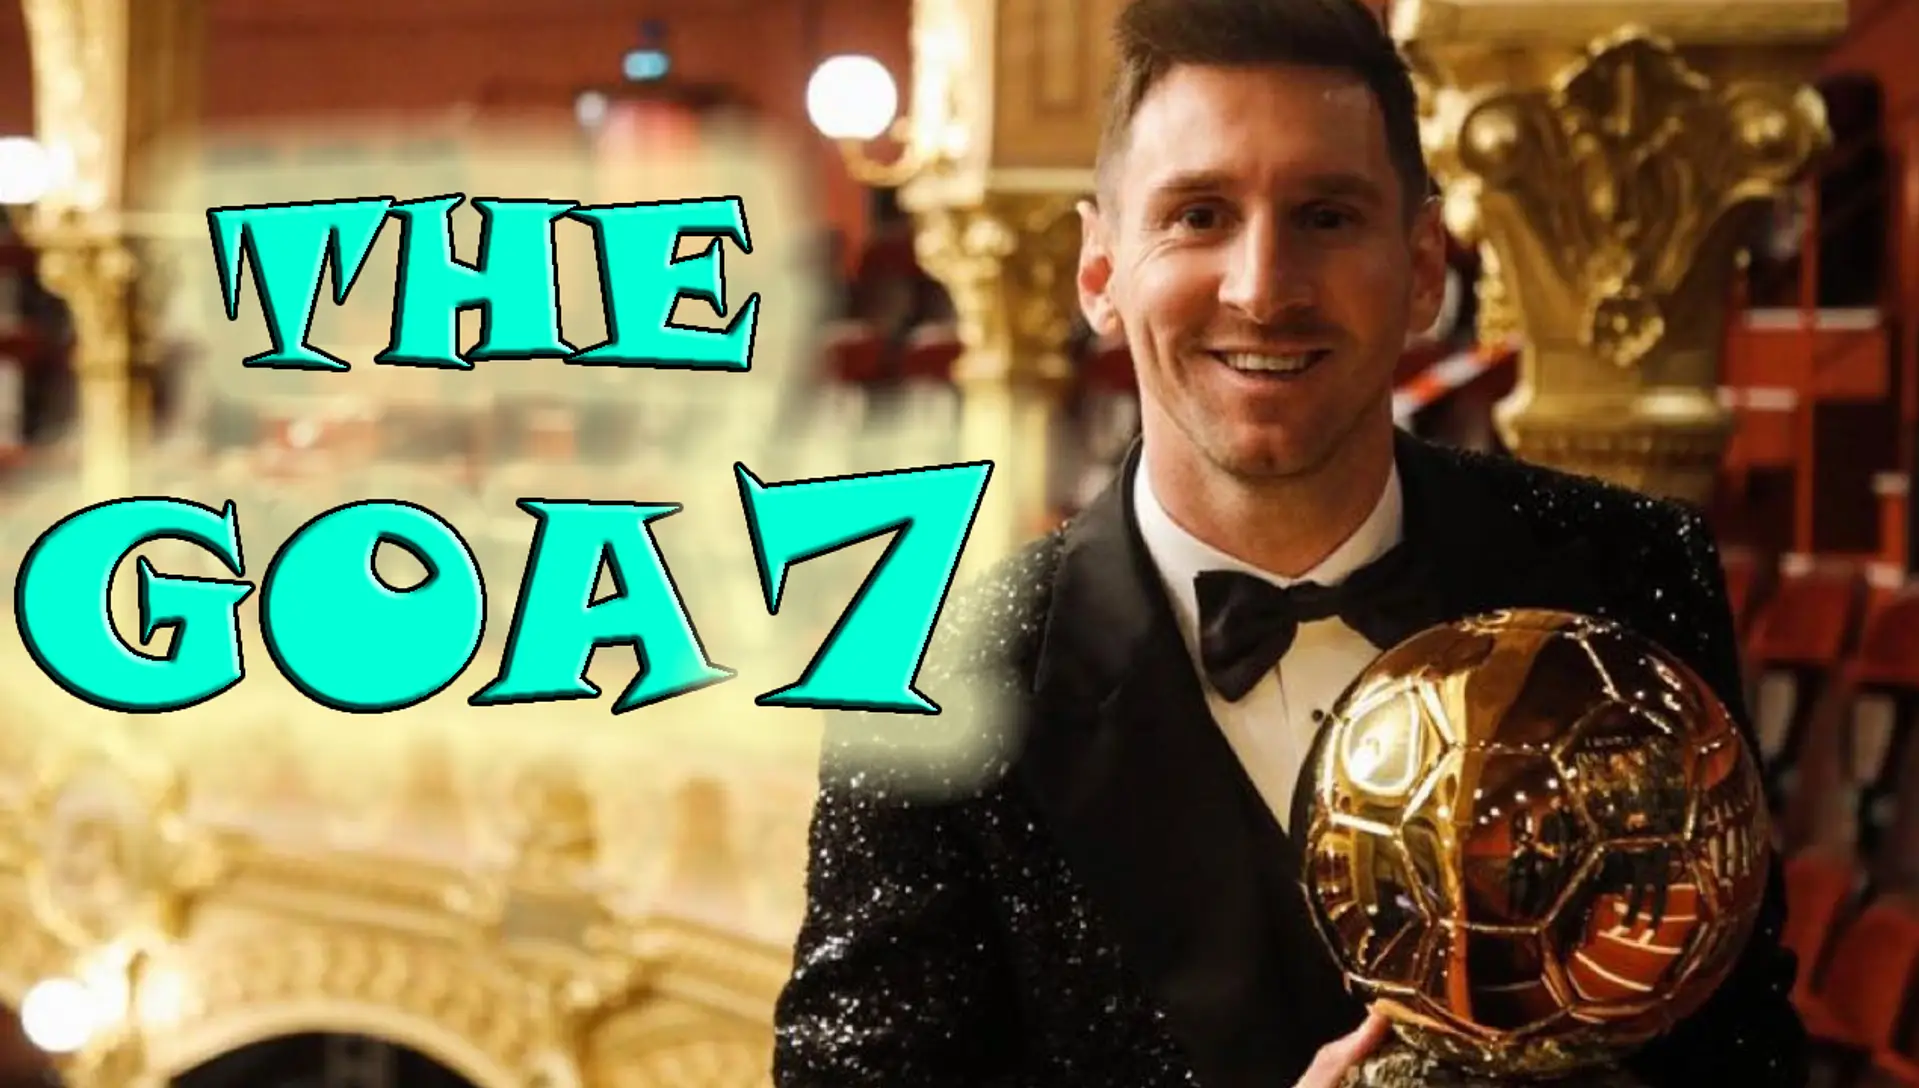 Messi es THE GOA7 y sus haters explotan 😂